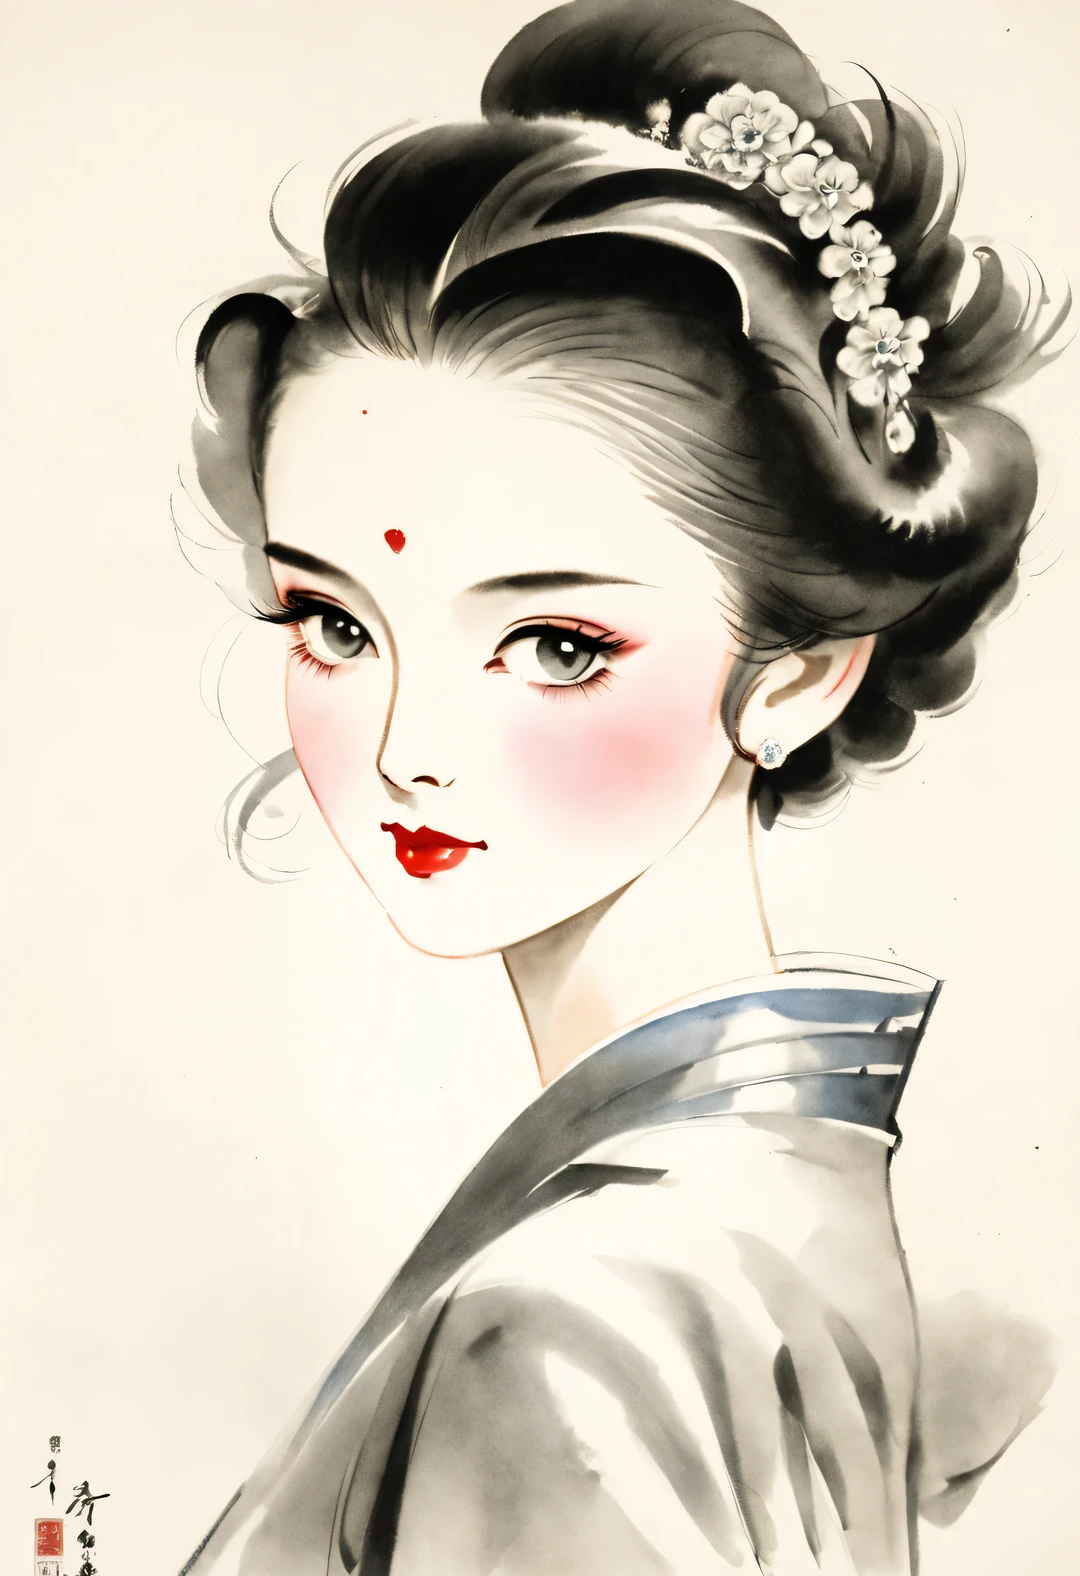 Retratos em tinta chinesa de mulheres bonitas na década de 1930, Luzes de cinema com penteado dos anos 1930, moda, Luz aérea, fechar-se, fechar-se, Holofote, nebuloso, Chen Jialeng, Mu Xia, Roupas lindas, arte de linha, Pintura a tinta,